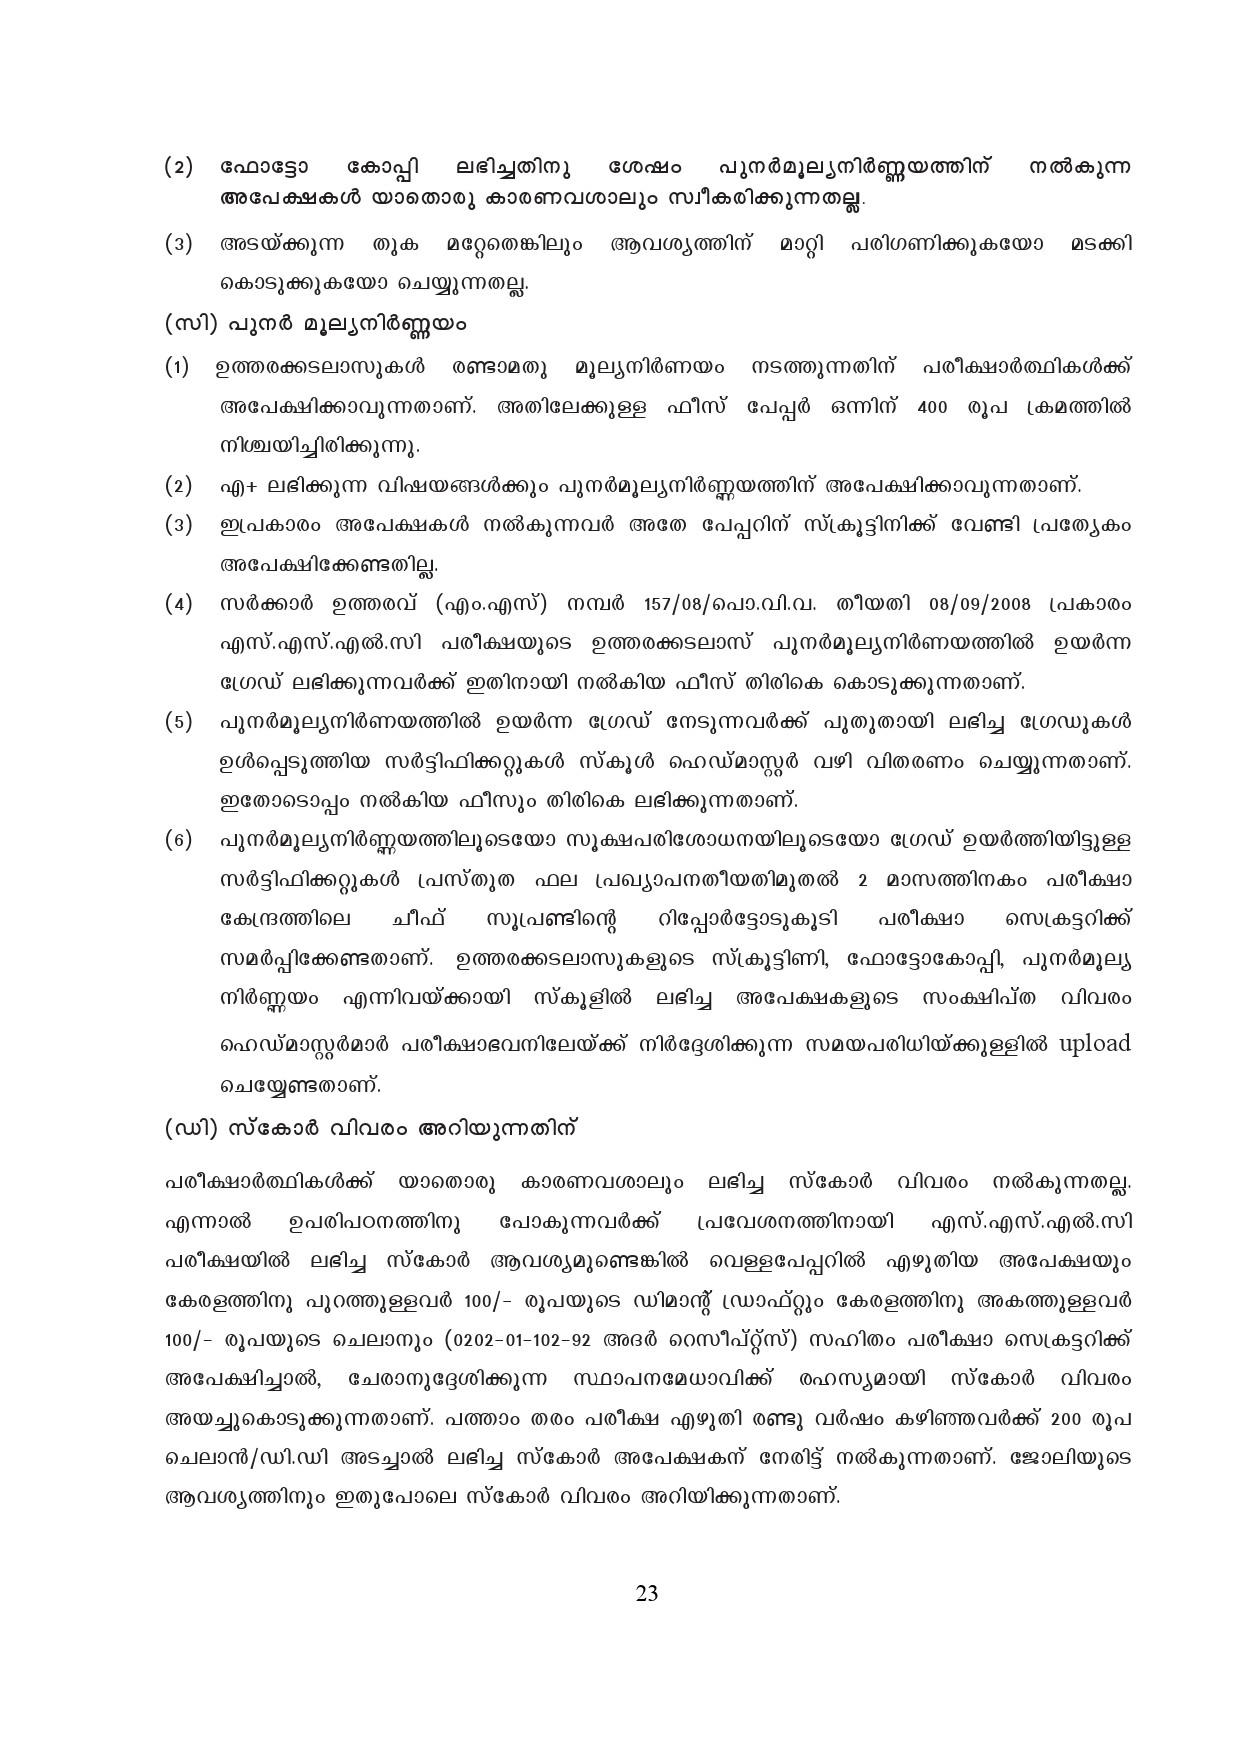 Kerala SSLC Exam Result 2019 - Notification Image 23